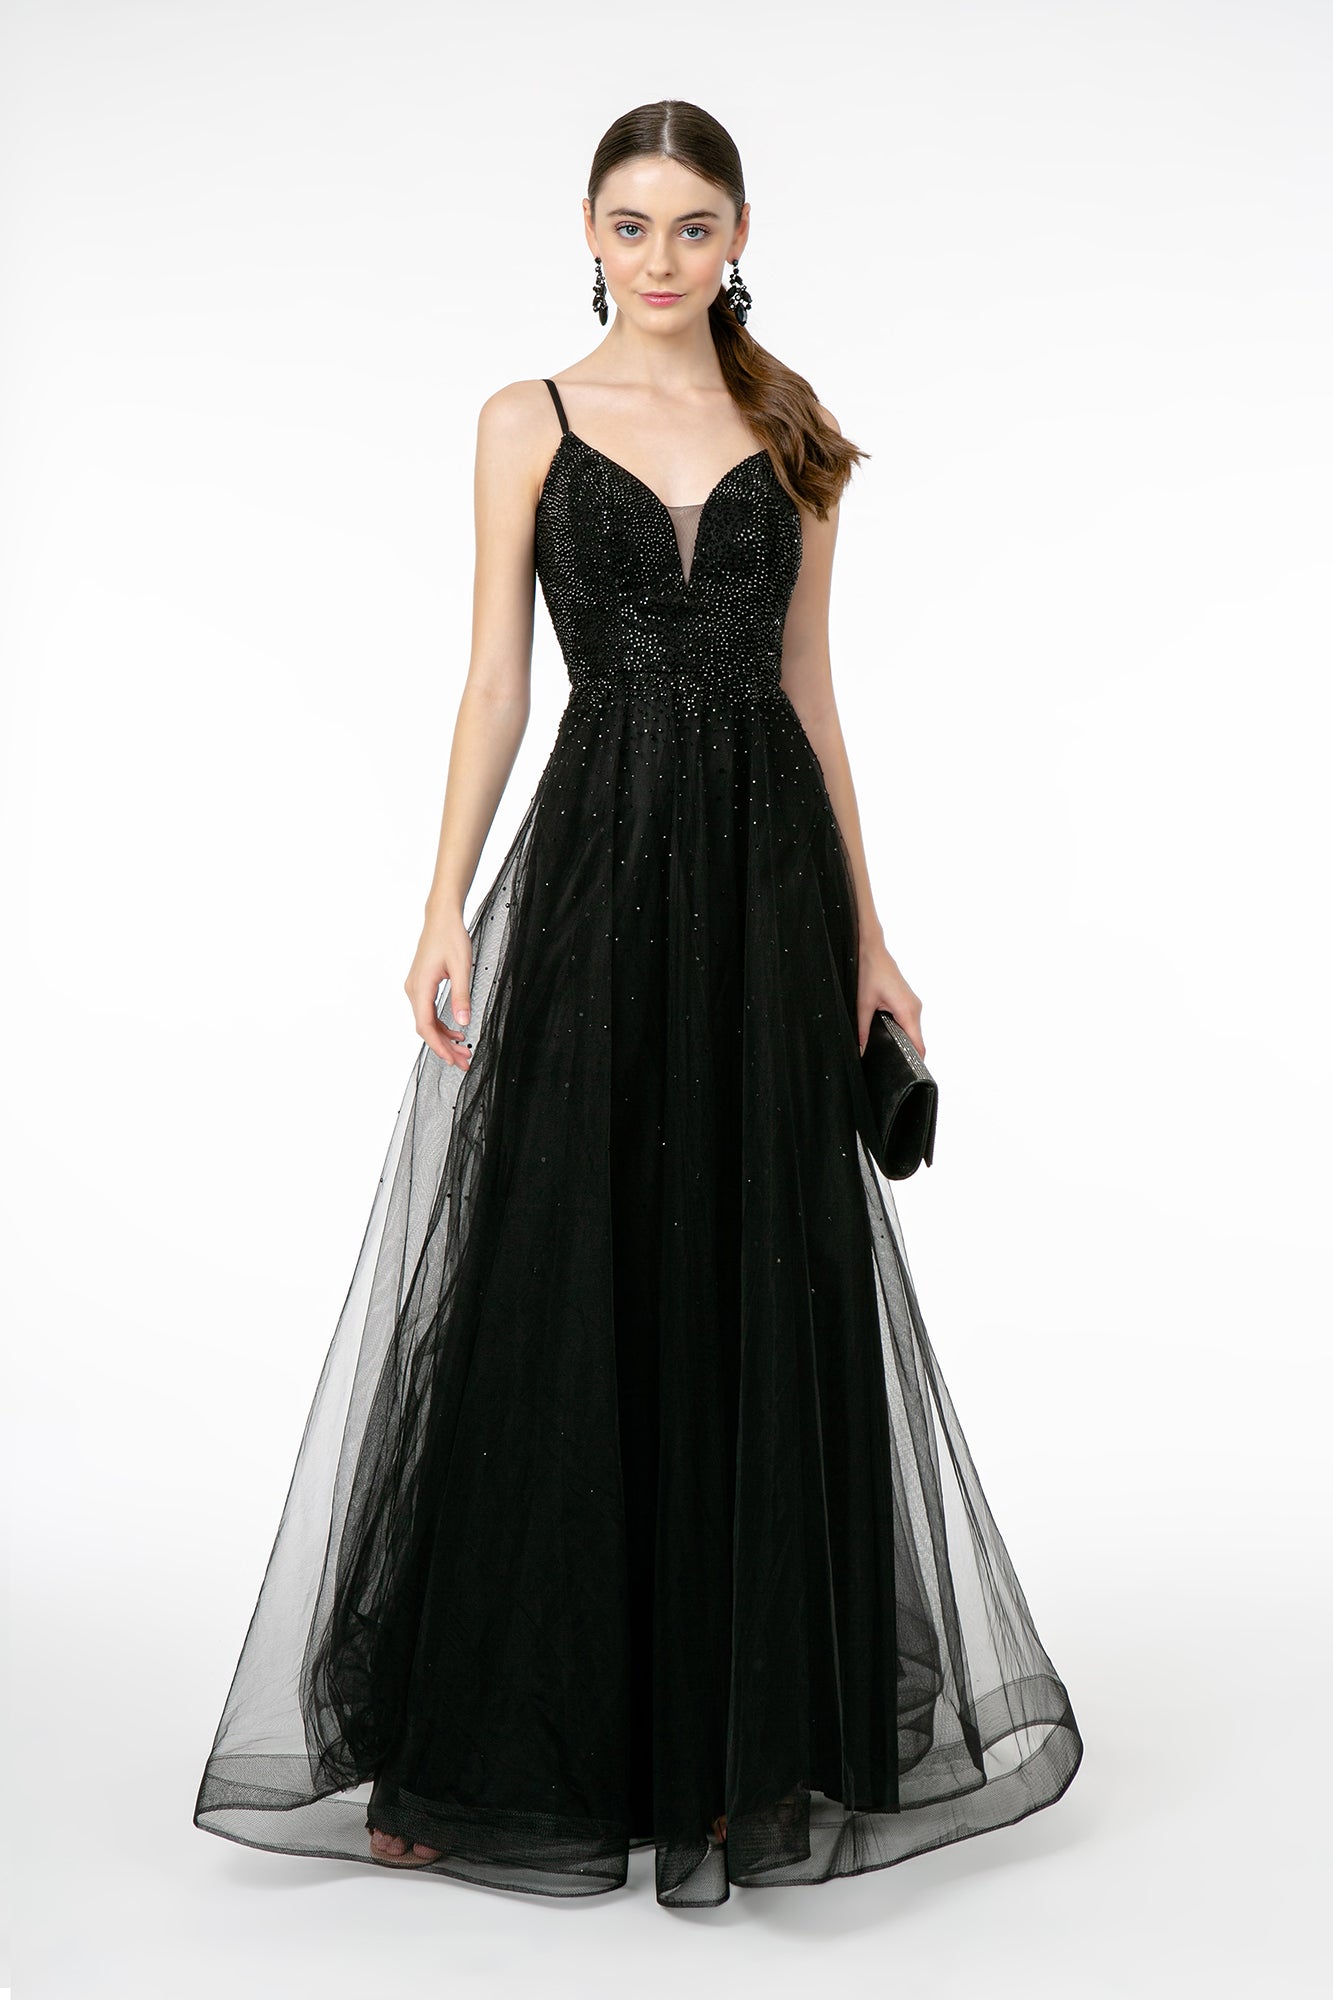 Embellished Illusion Deep V-Neck Dress - GL2891 Elizabeth K